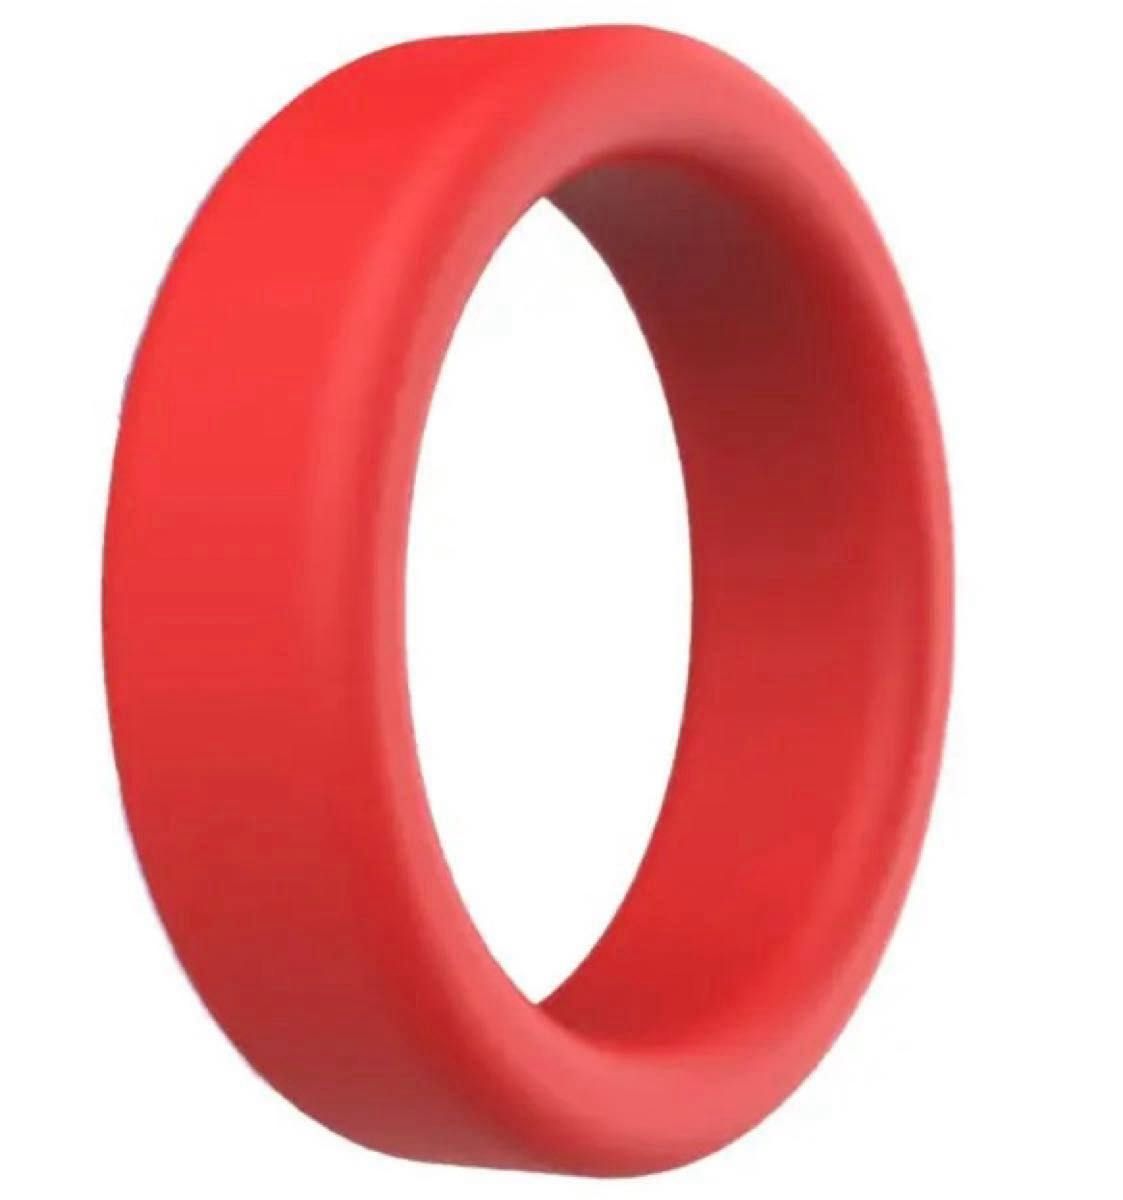  メンズ アクセサリー コックリング ペニスリング C-ring シリコン製 赤